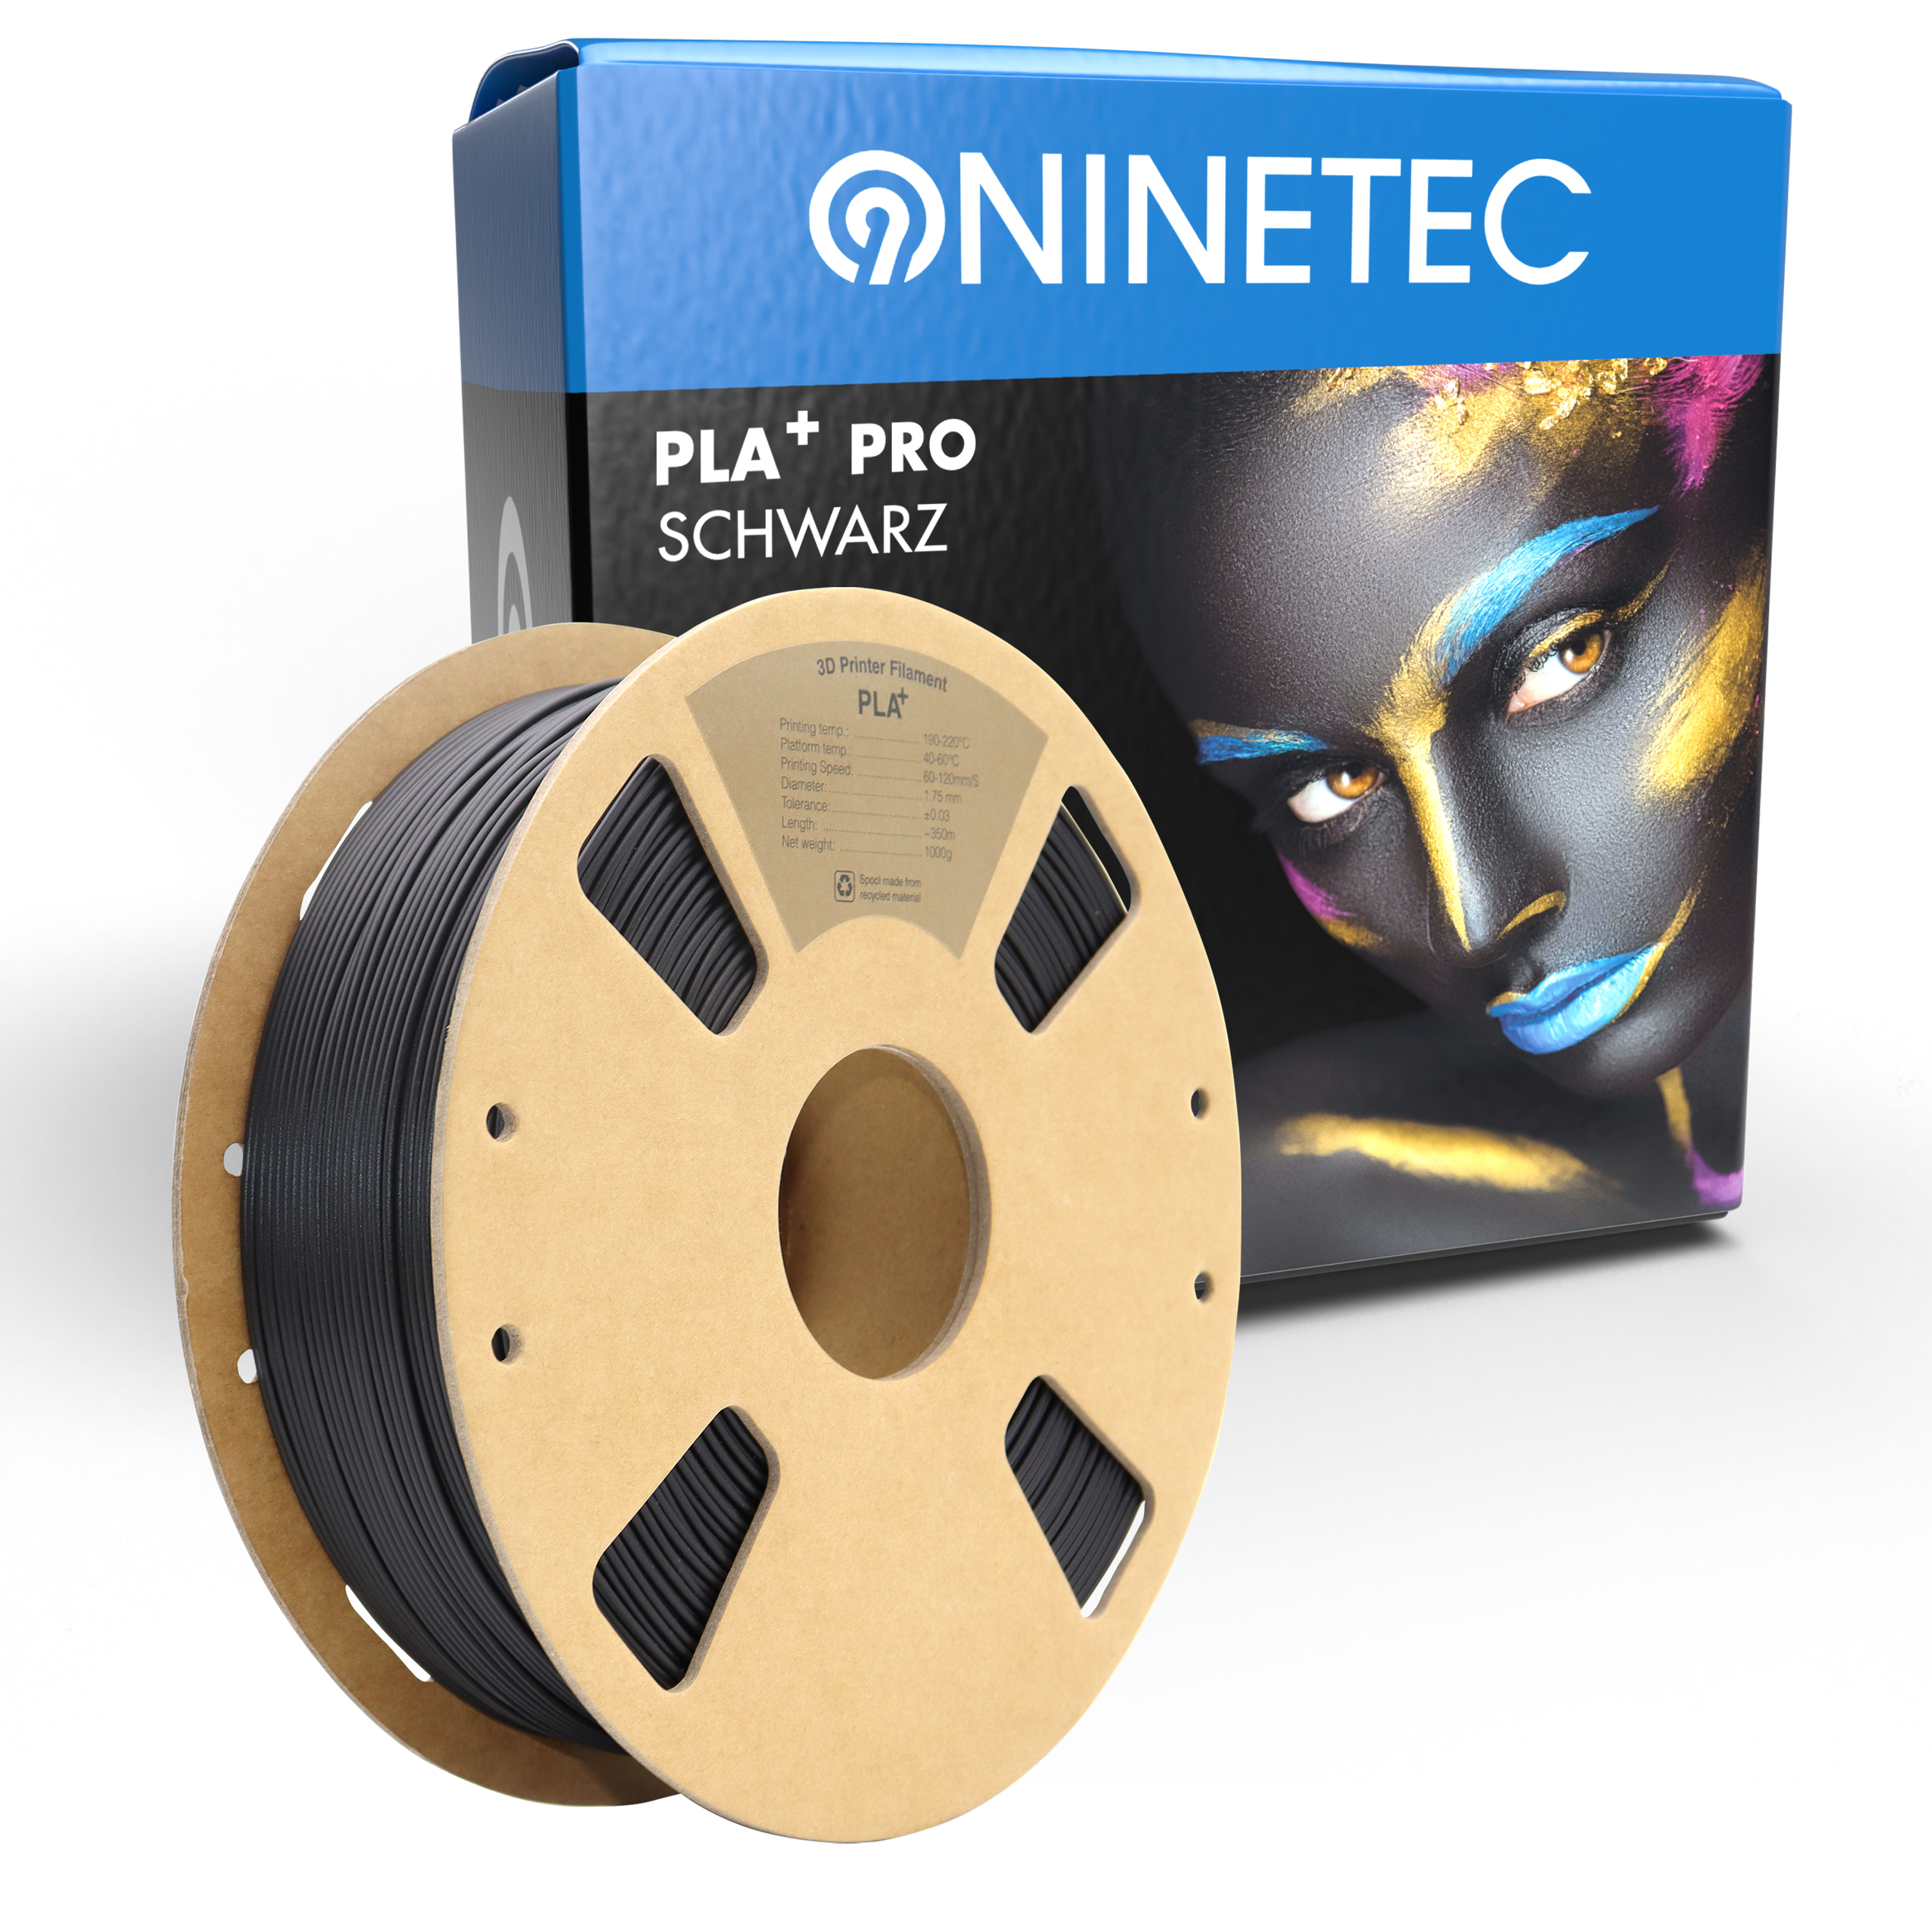 NINETEC PLA+ PRO schwarz Filament